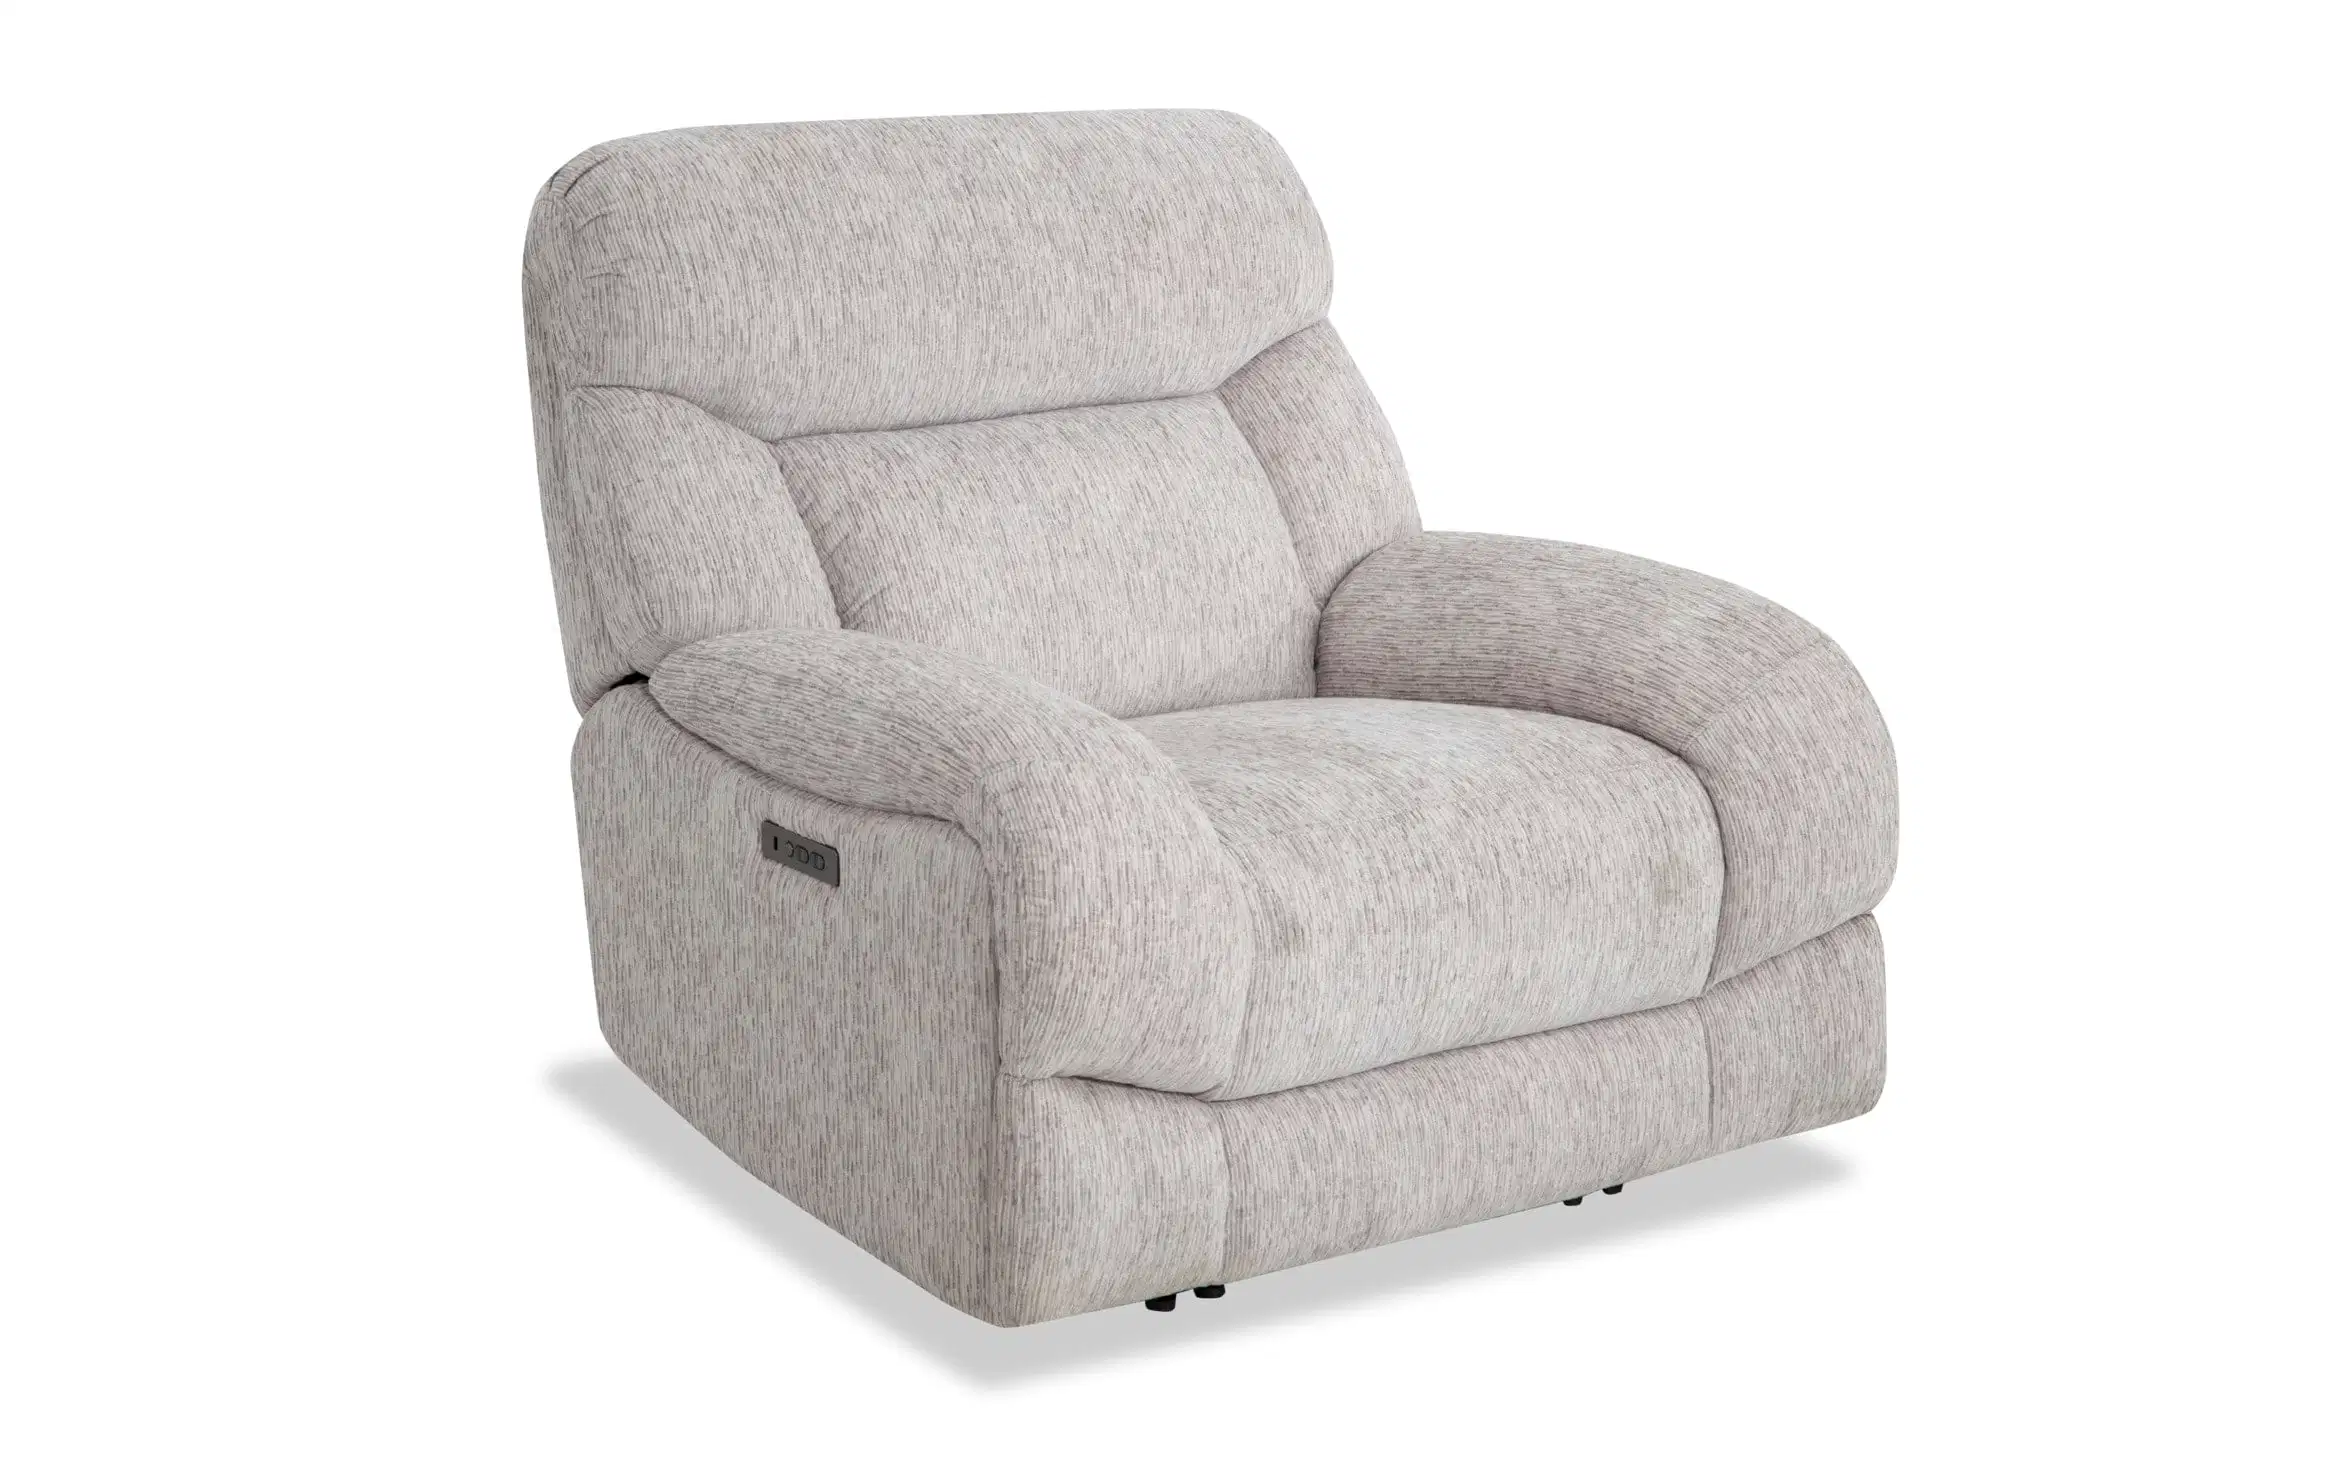 CY Recliner Sofa Home Поворотное кресло для коромысла